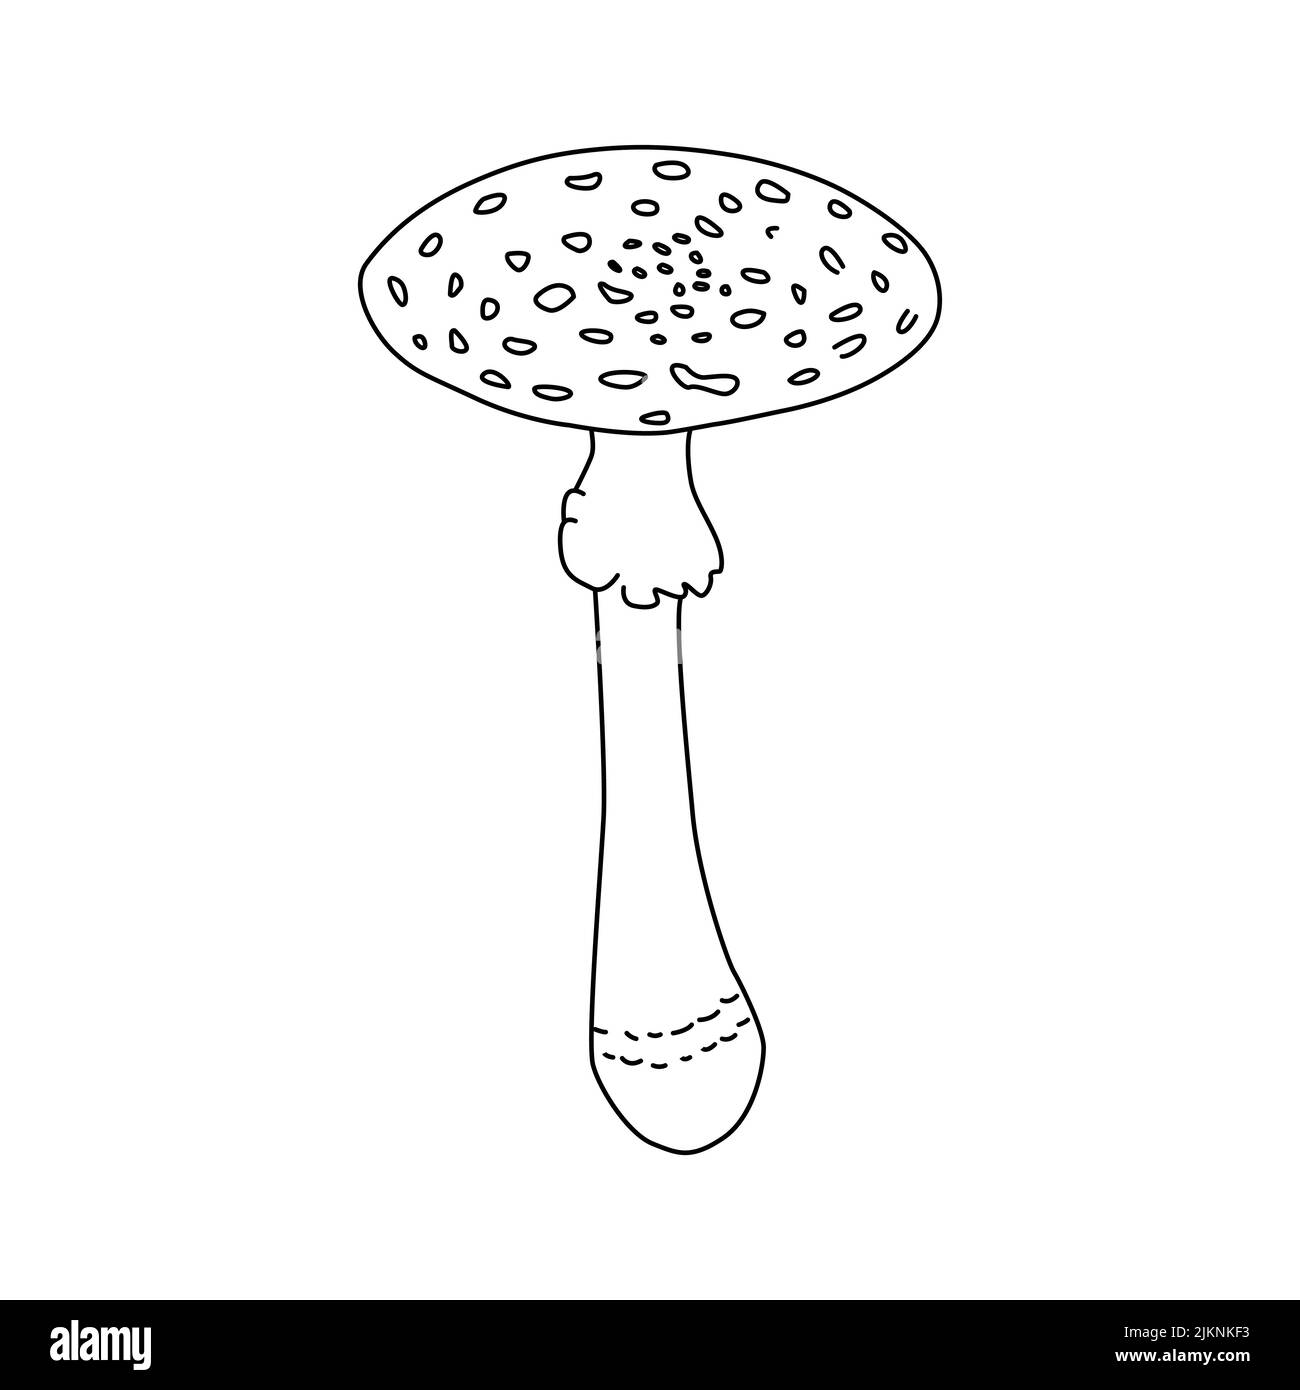 Pilze Vektor-Illustration gezeichnete Hand, gefährliche Pilze, Fliegenpilz, Fliegenpilz, weißer Fliegenpilz, Familie von Pilzen isoliert weißen Hintergrund Stock Vektor